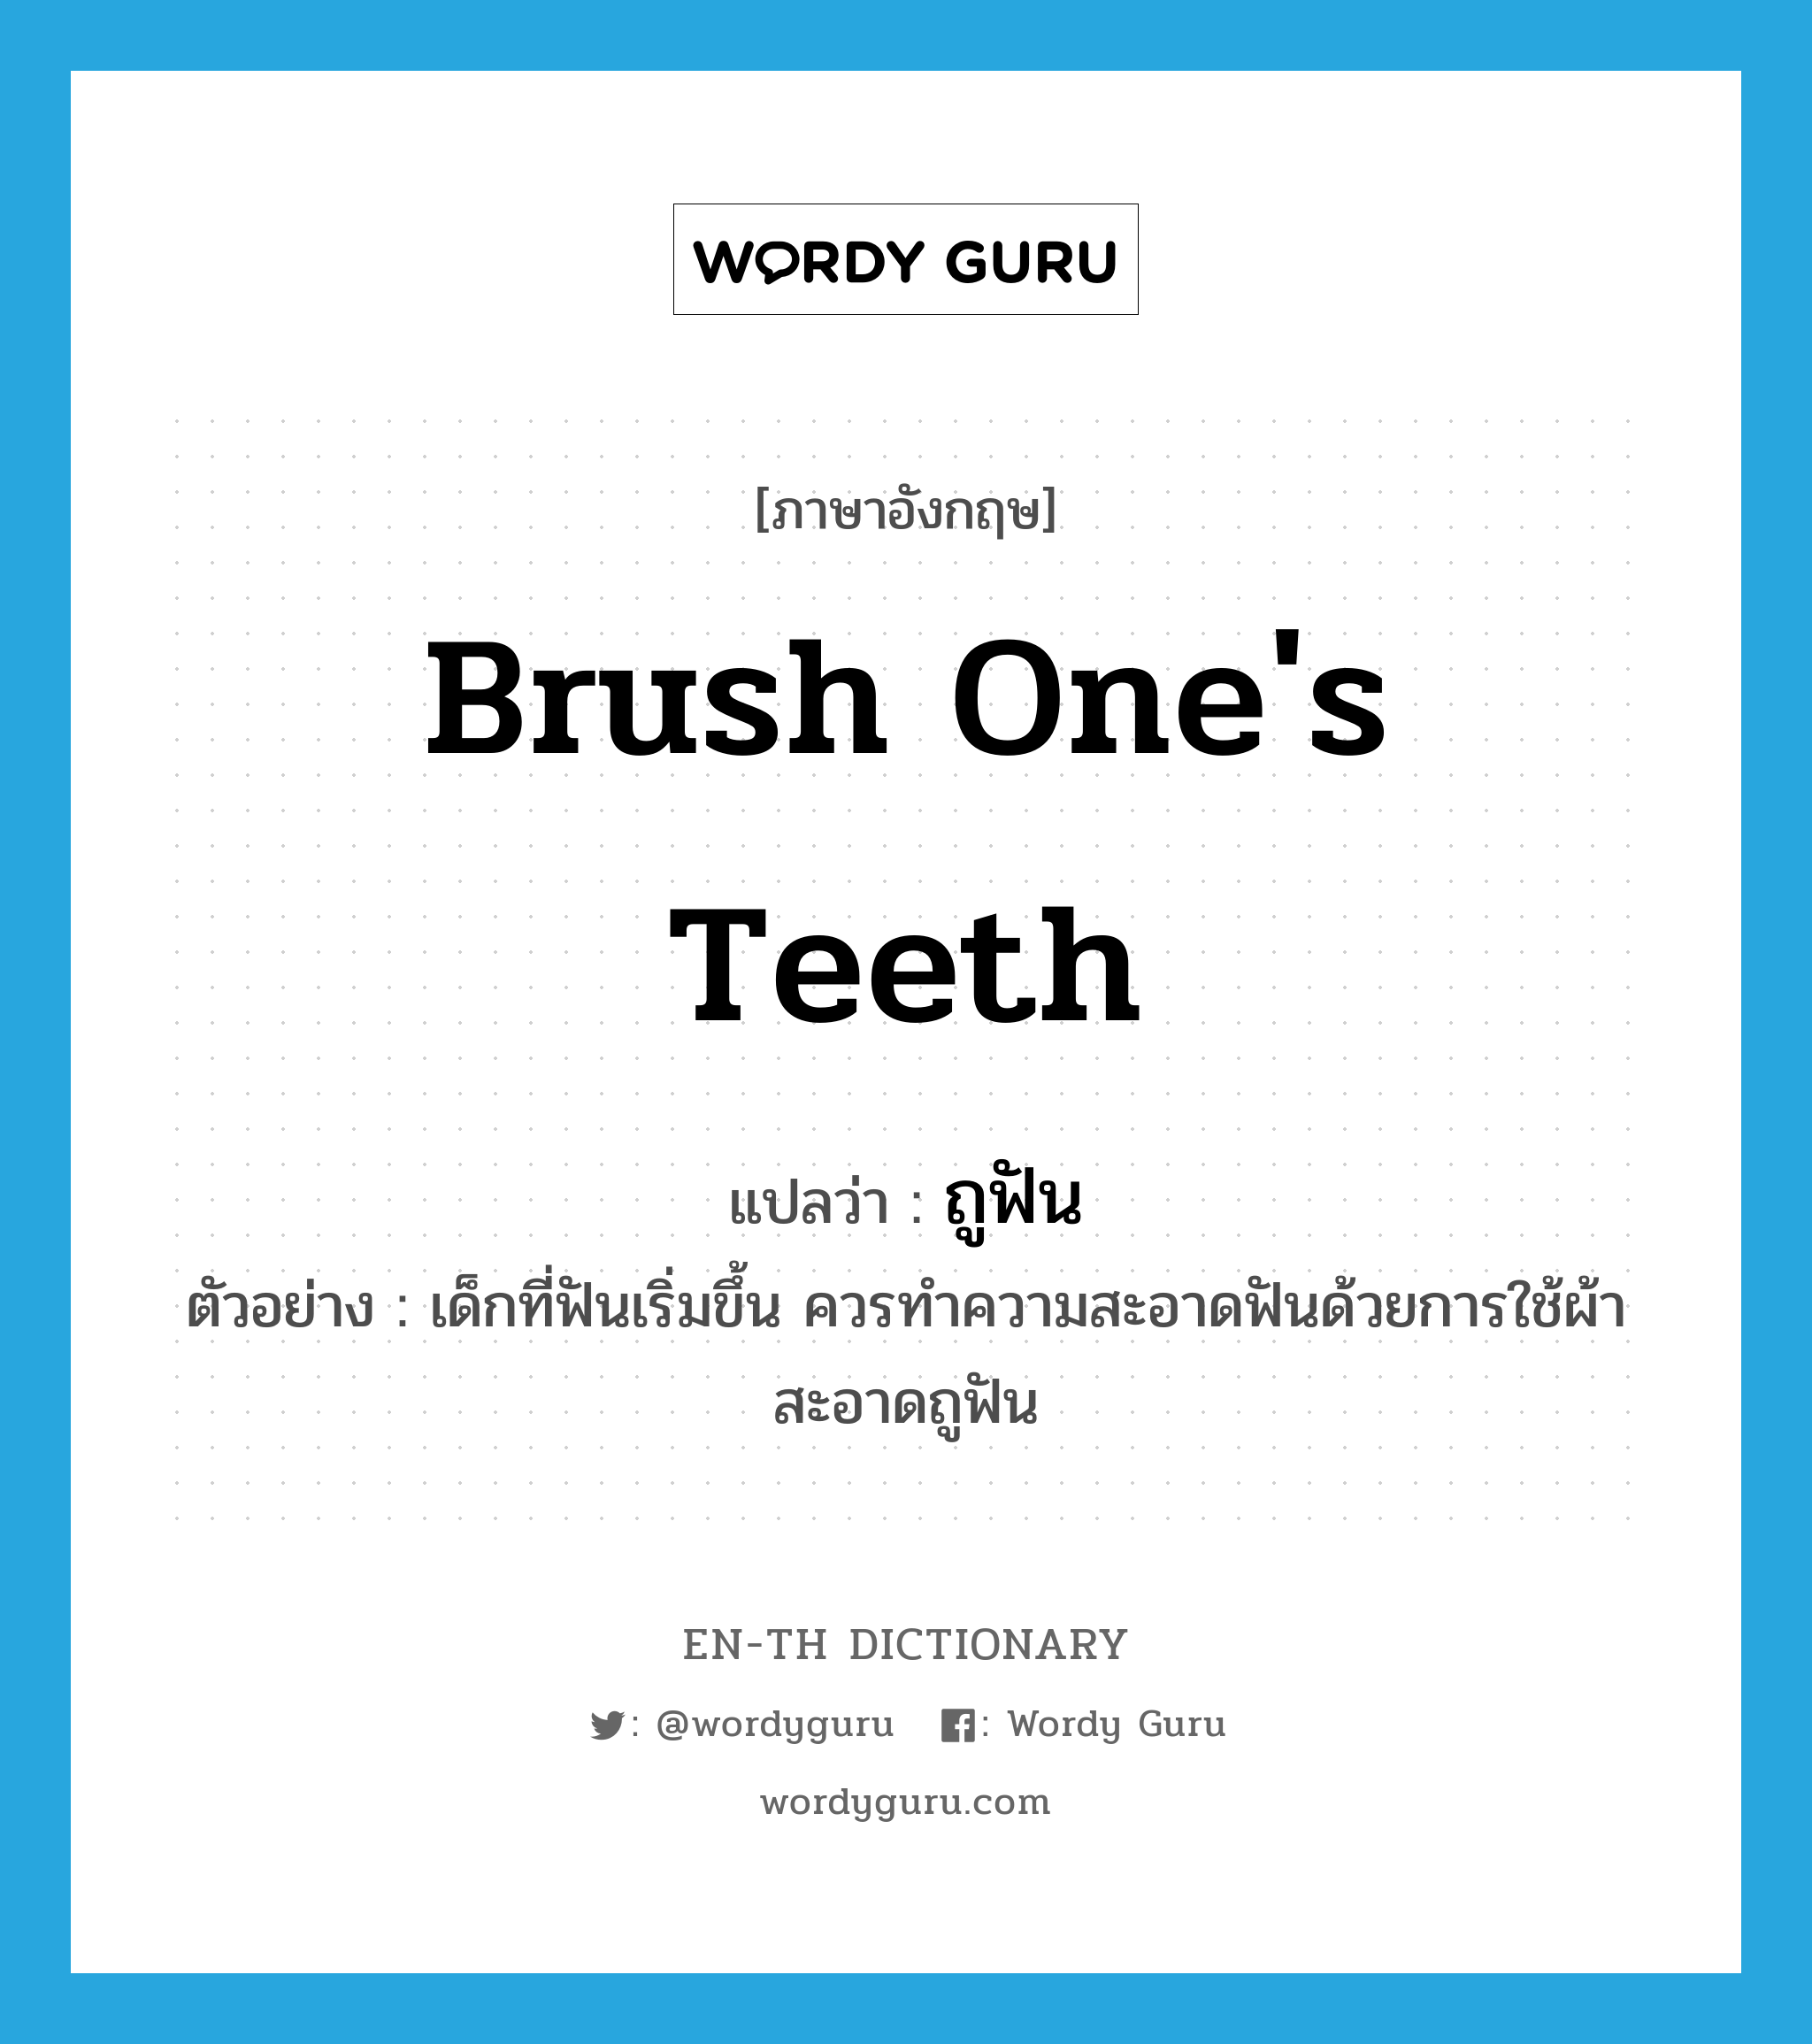 ถูฟัน ภาษาอังกฤษ?, คำศัพท์ภาษาอังกฤษ ถูฟัน แปลว่า brush one's teeth ประเภท V ตัวอย่าง เด็กที่ฟันเริ่มขึ้น ควรทำความสะอาดฟันด้วยการใช้ผ้าสะอาดถูฟัน หมวด V